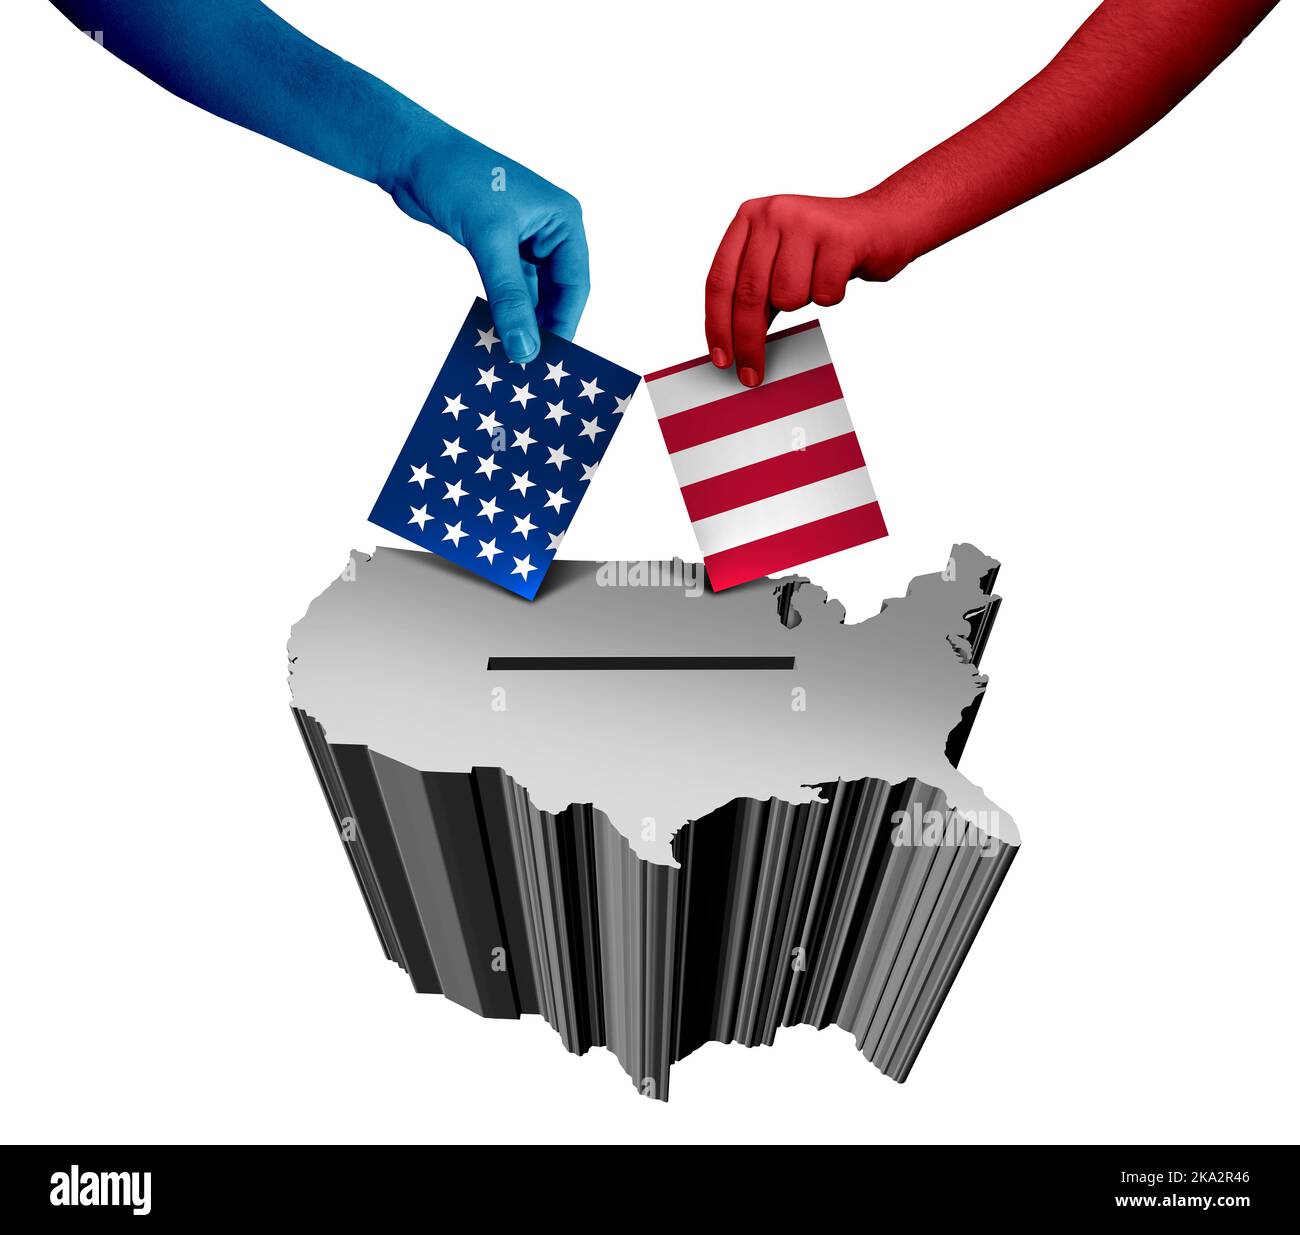 Die Vereinigten Staaten wählen und die USA wählen oder die USA wählen als amerikanisches Wahlkonzept mit roten und blauen Staatssymbolen als Symbol des Präsidenten Stockfoto